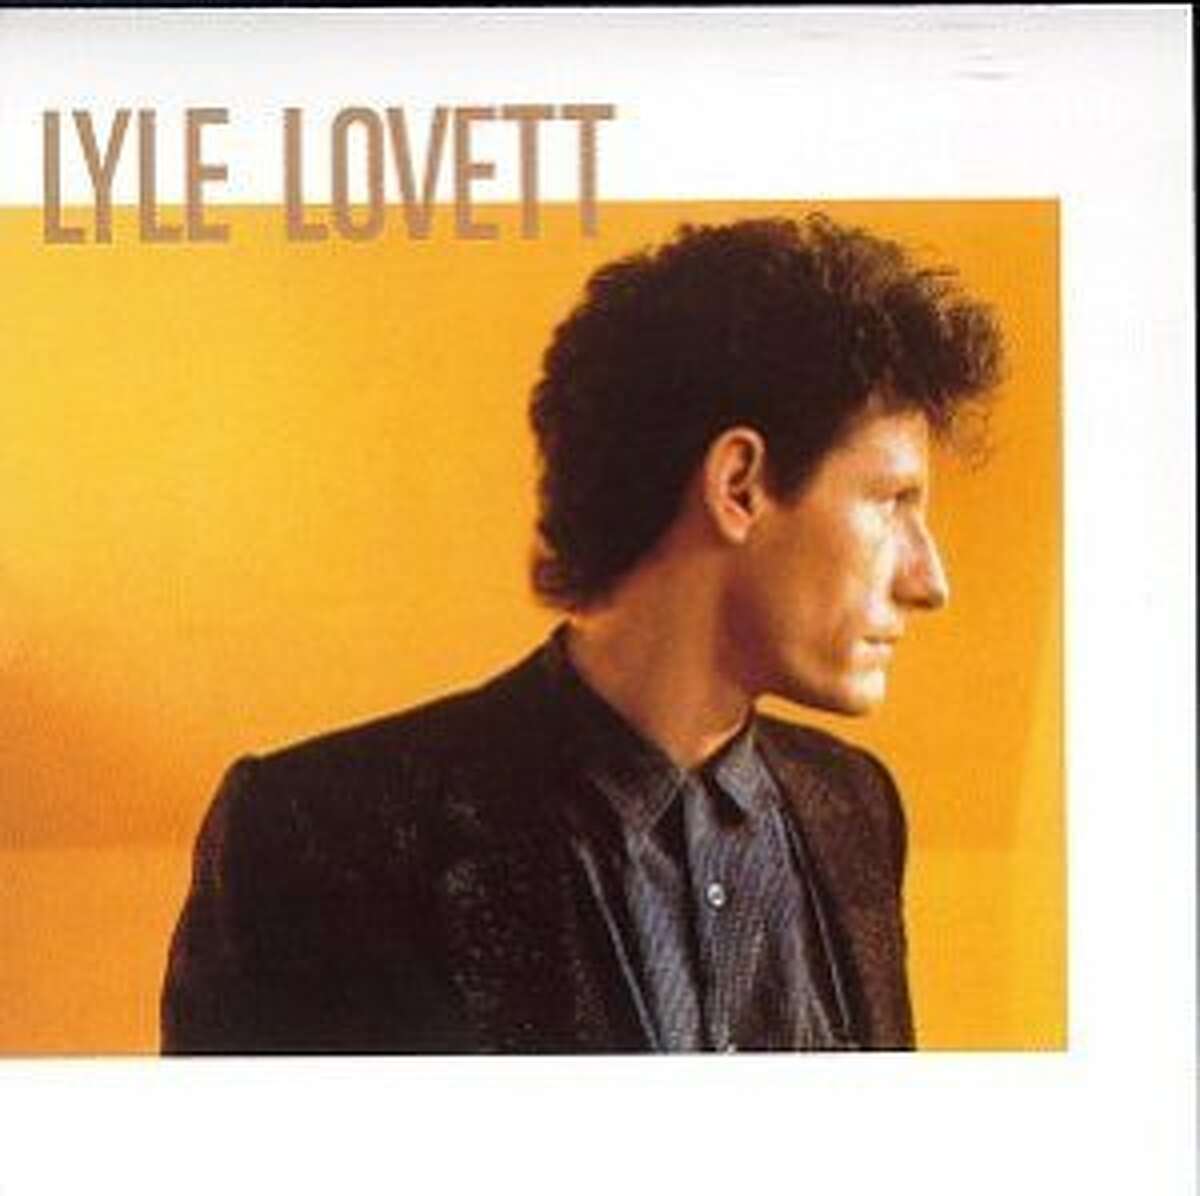 Cover of Lyle Lovett’s 1986 debut album